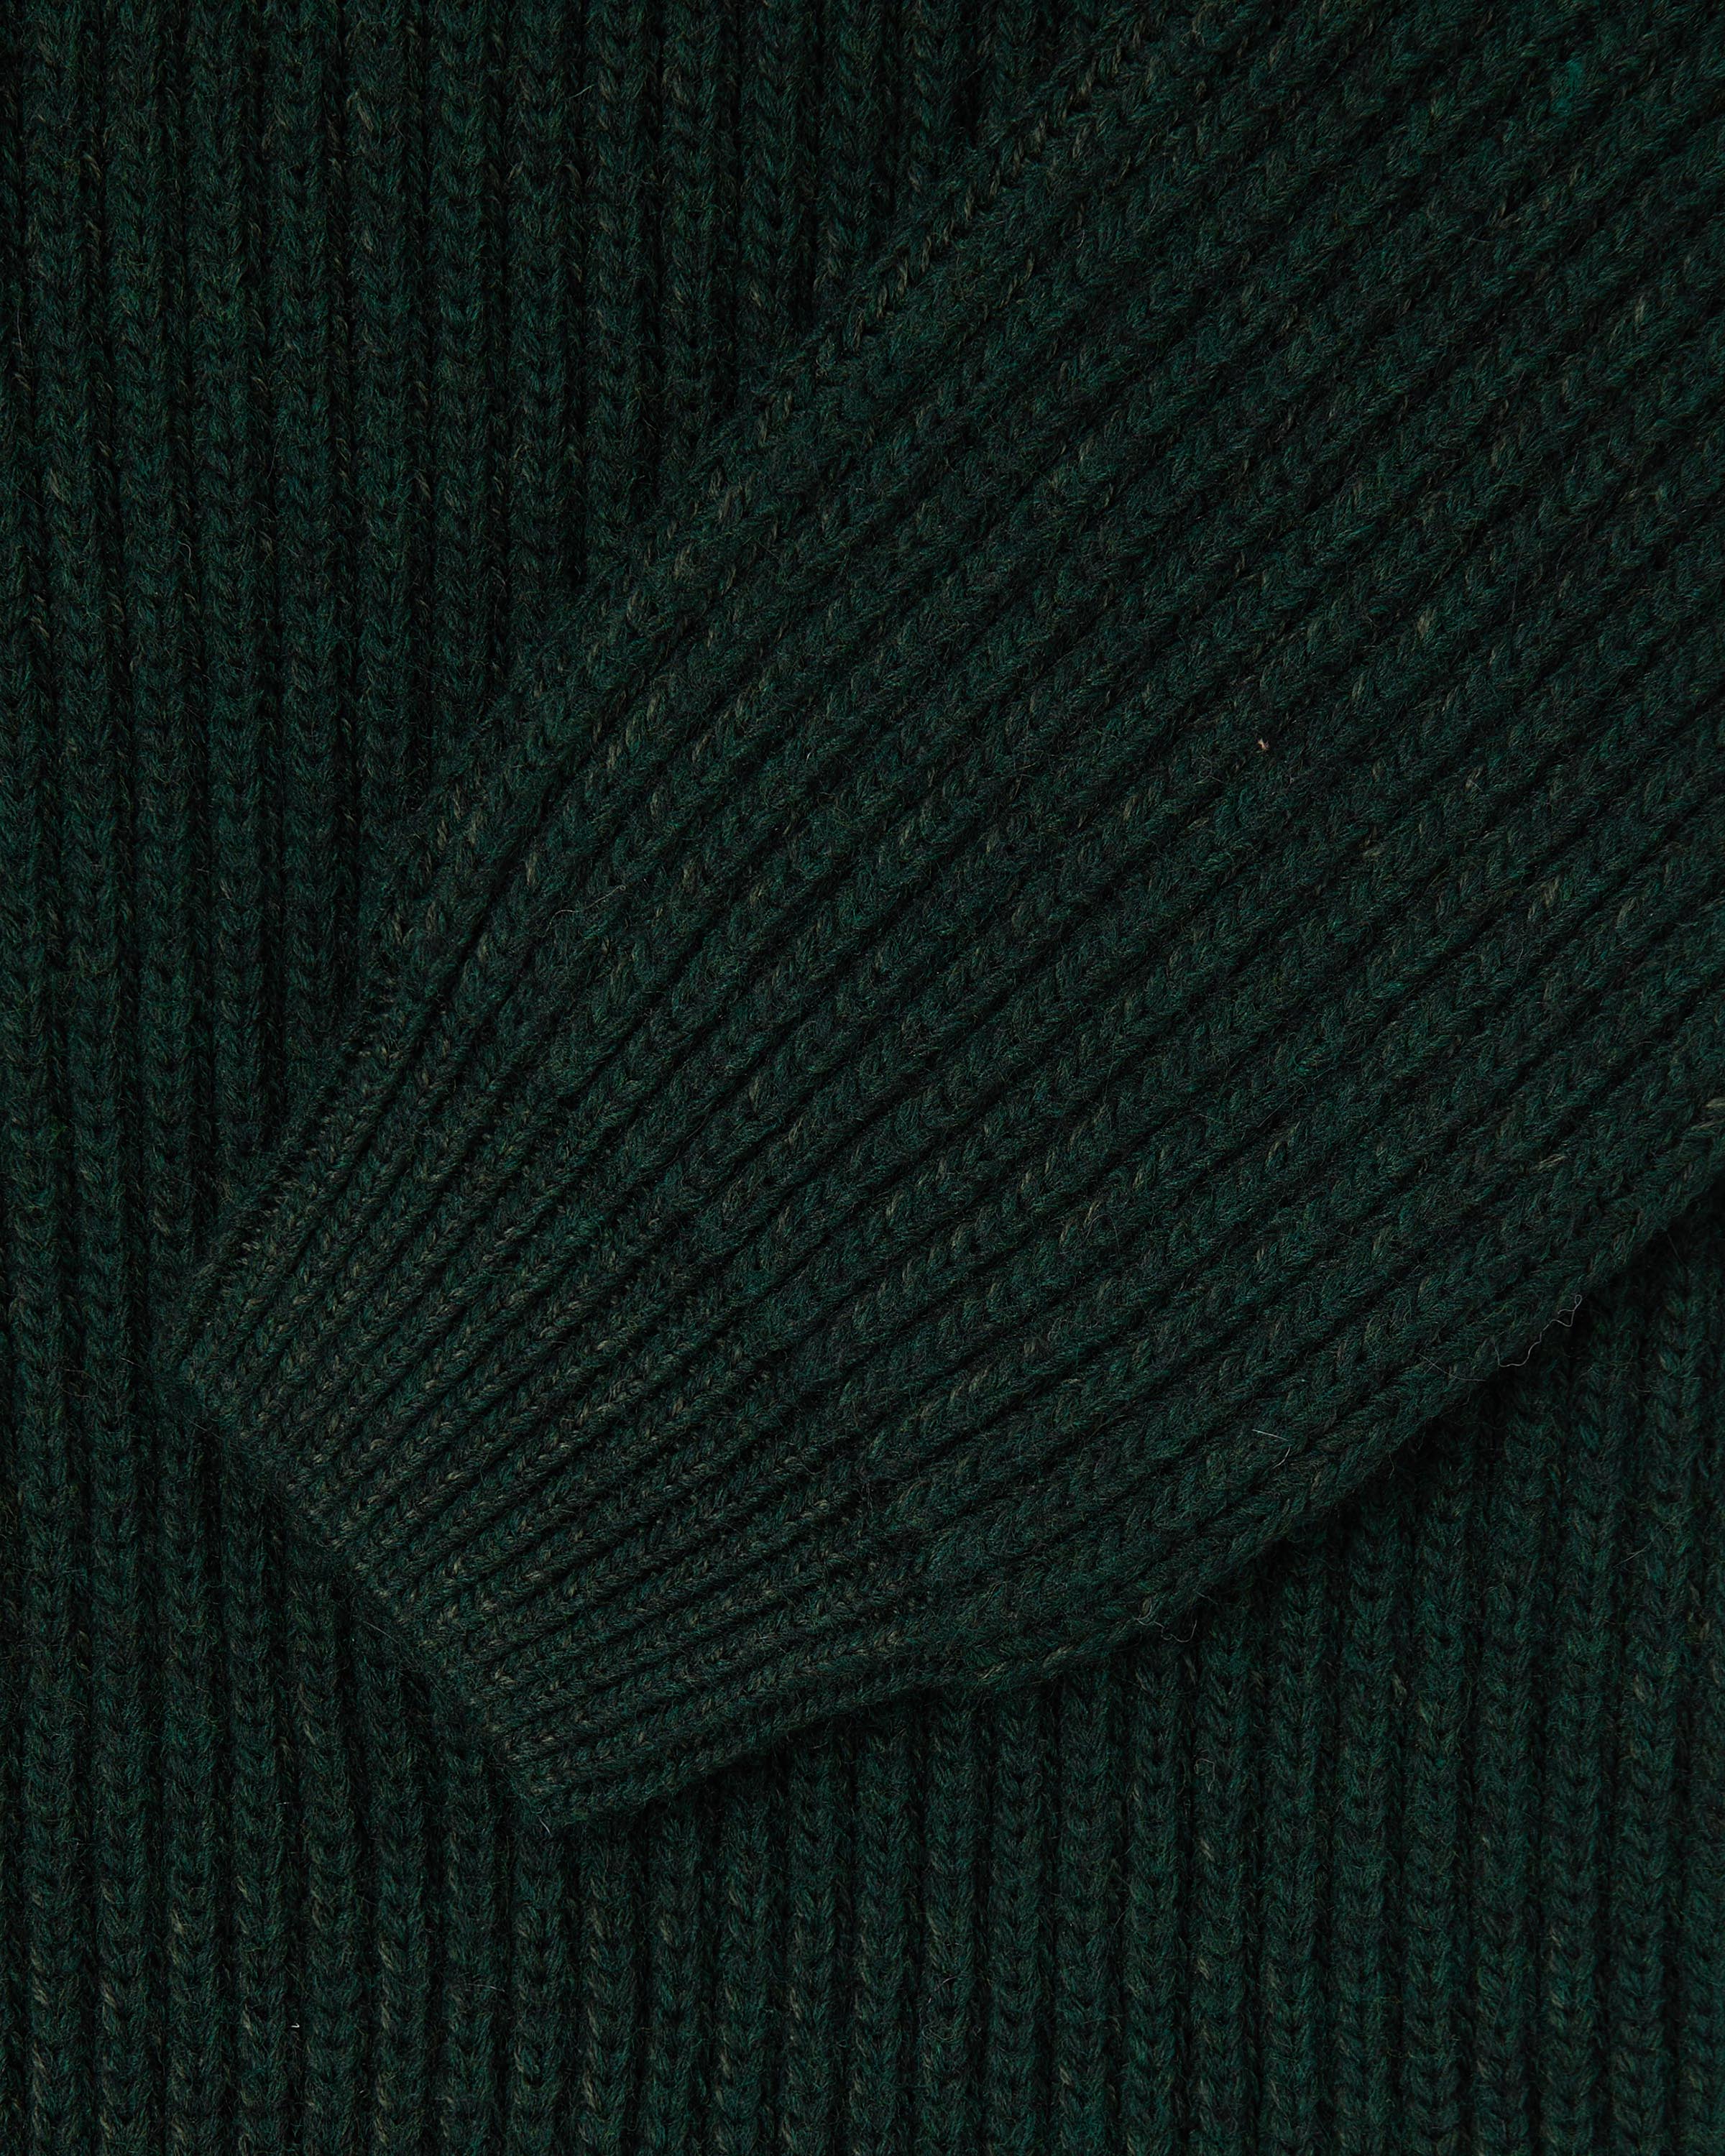 Roni High Collar Sweater